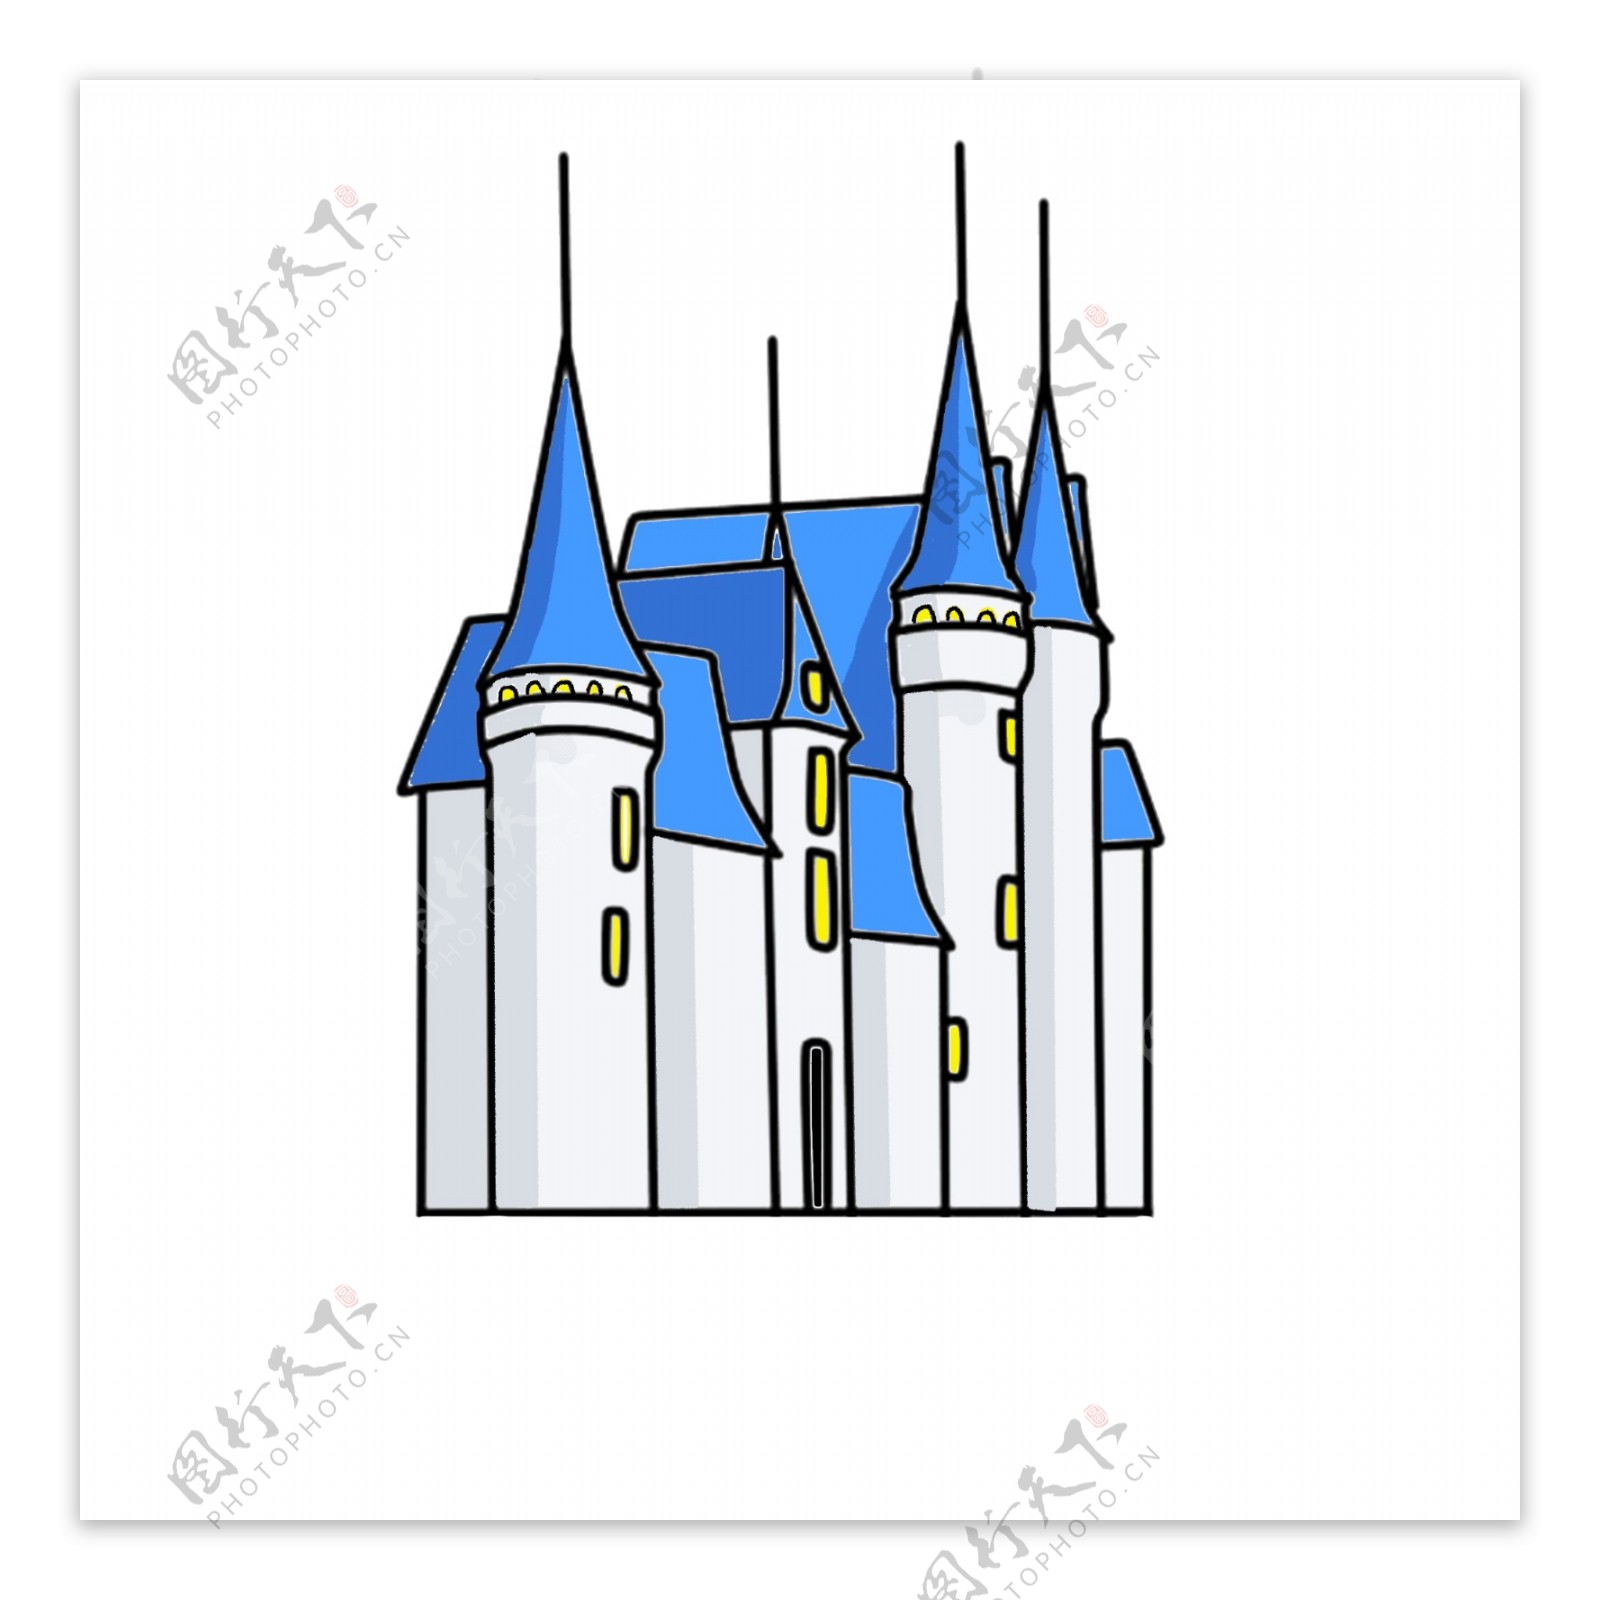 蓝色建筑城堡设计可商用元素